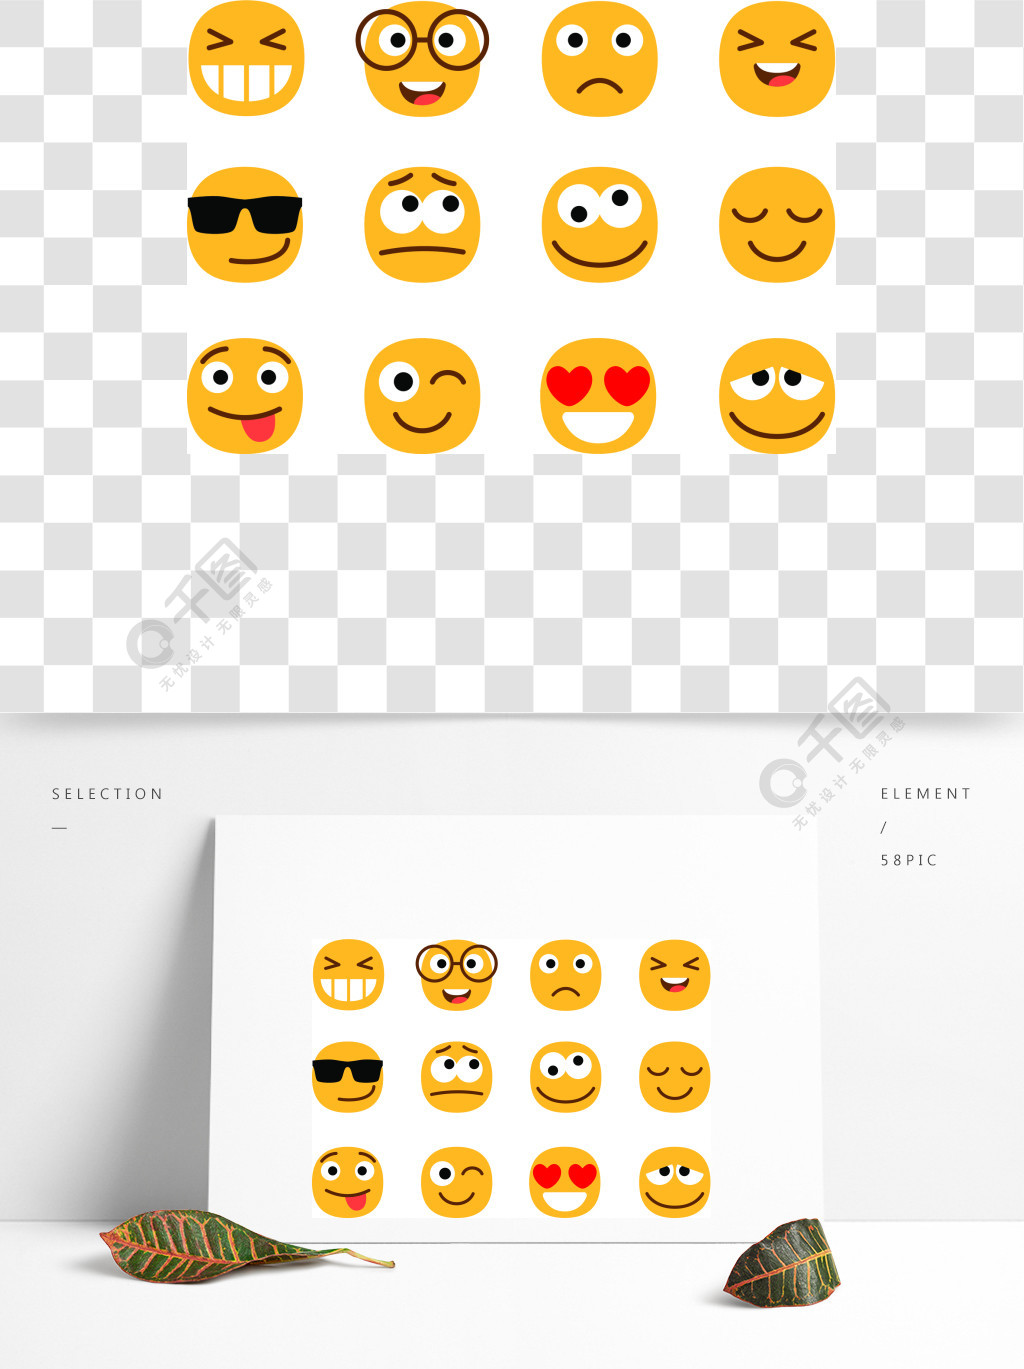 黄色的可爱和有趣的表情脸微笑或微笑的人标志,在白色背景隔绝的emoji